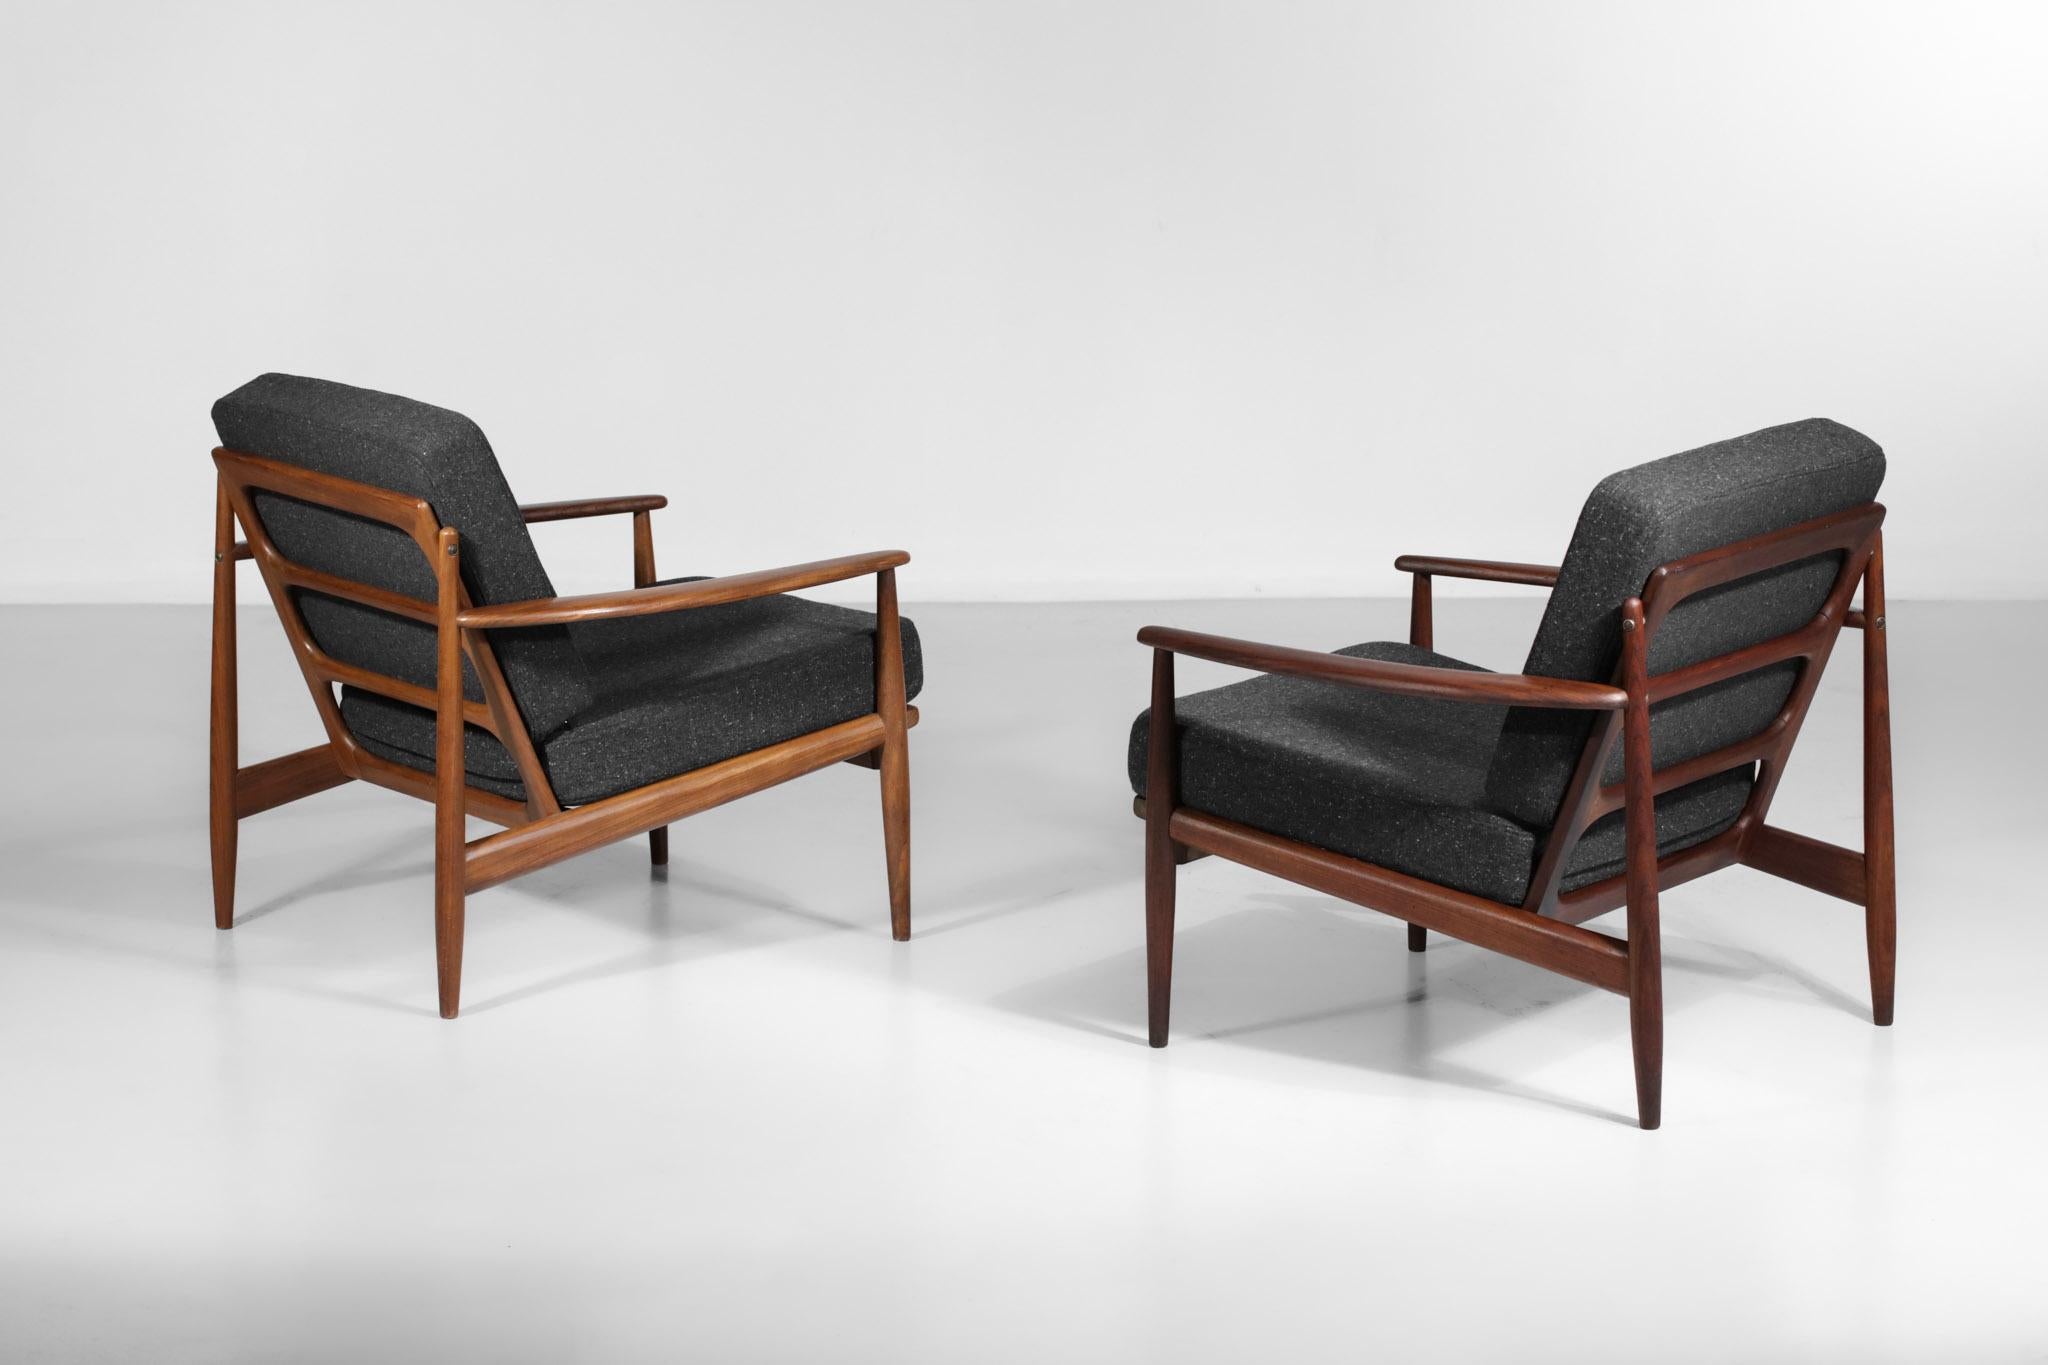 Pair of Armchairs Style of Grete Jalk Danish Scandinavian Teak Design 60's 1